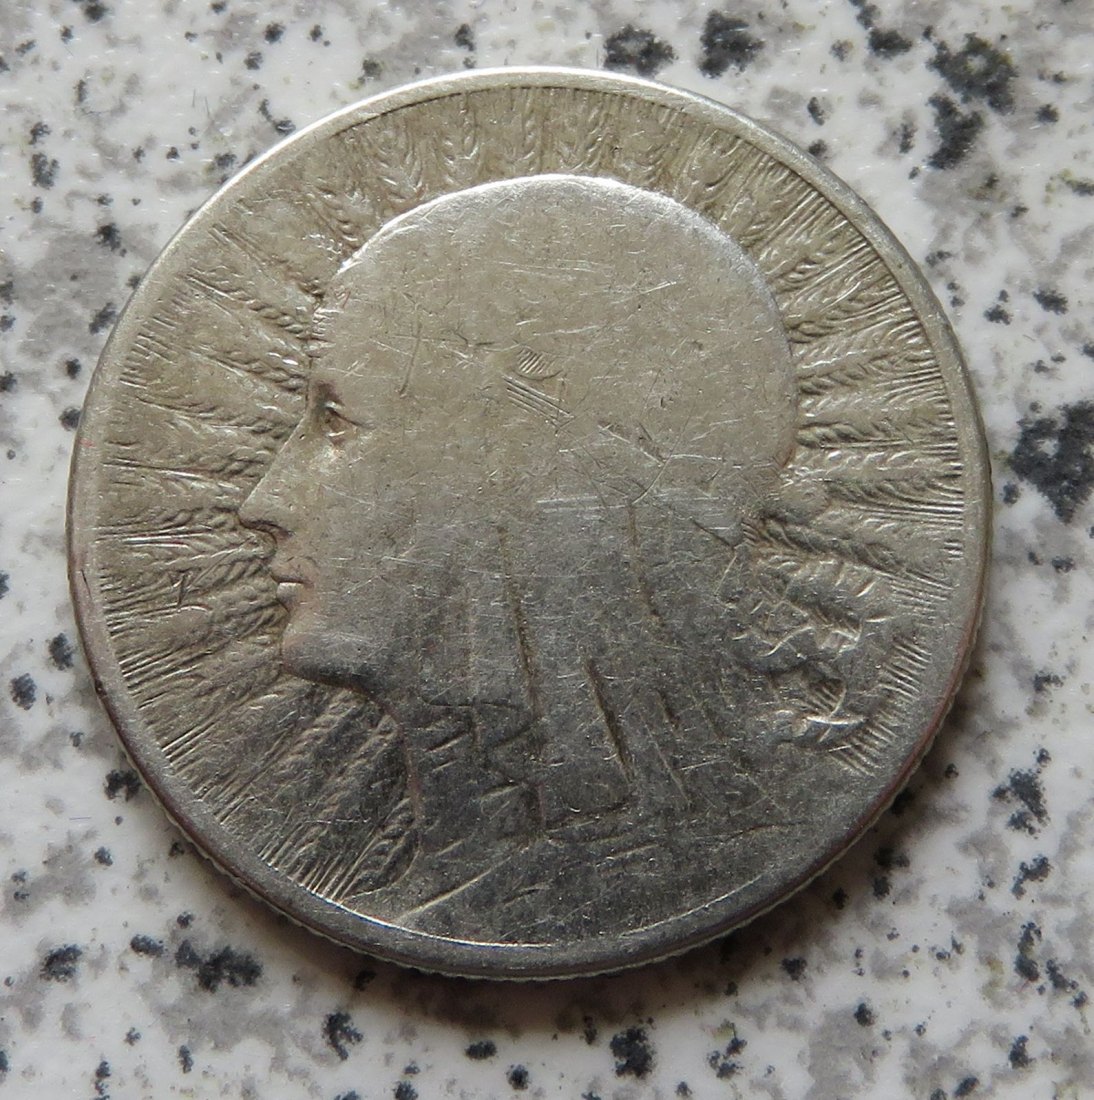  Polen 2 Zloty 1934, besseres Jahr   